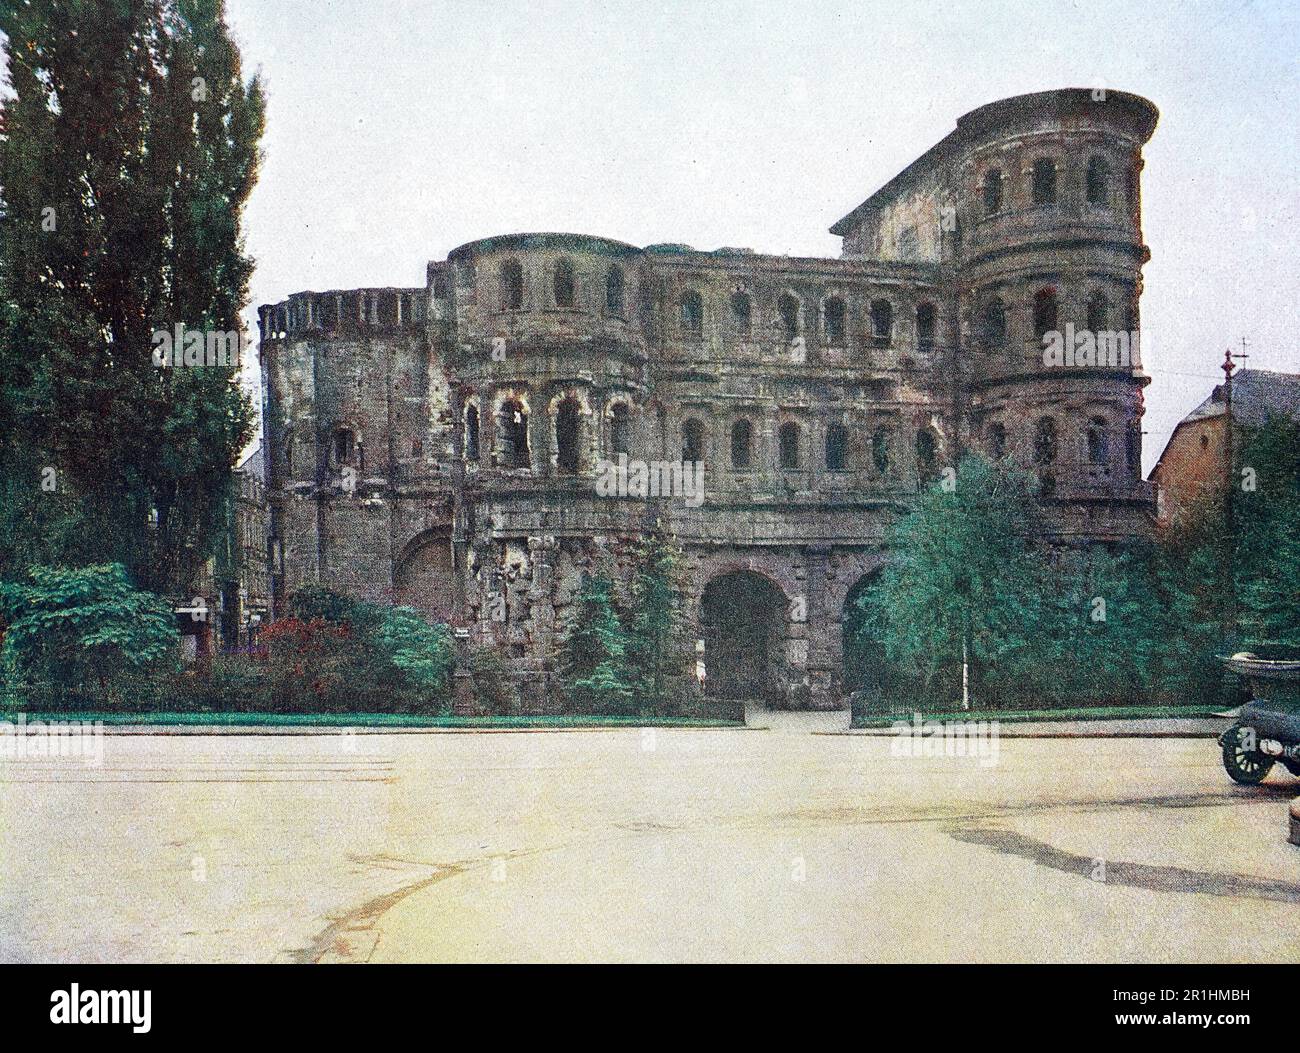 Die porta Nigra in Trier im Jahre 1910, Rheinland-Pfalz, Deutschland, Fotografie, restaurierte digitale Reproduktion einer Originalvorlage aus dem frühen 20. Jahrhundert, genaues Originalatum nicht bekannt Foto Stock